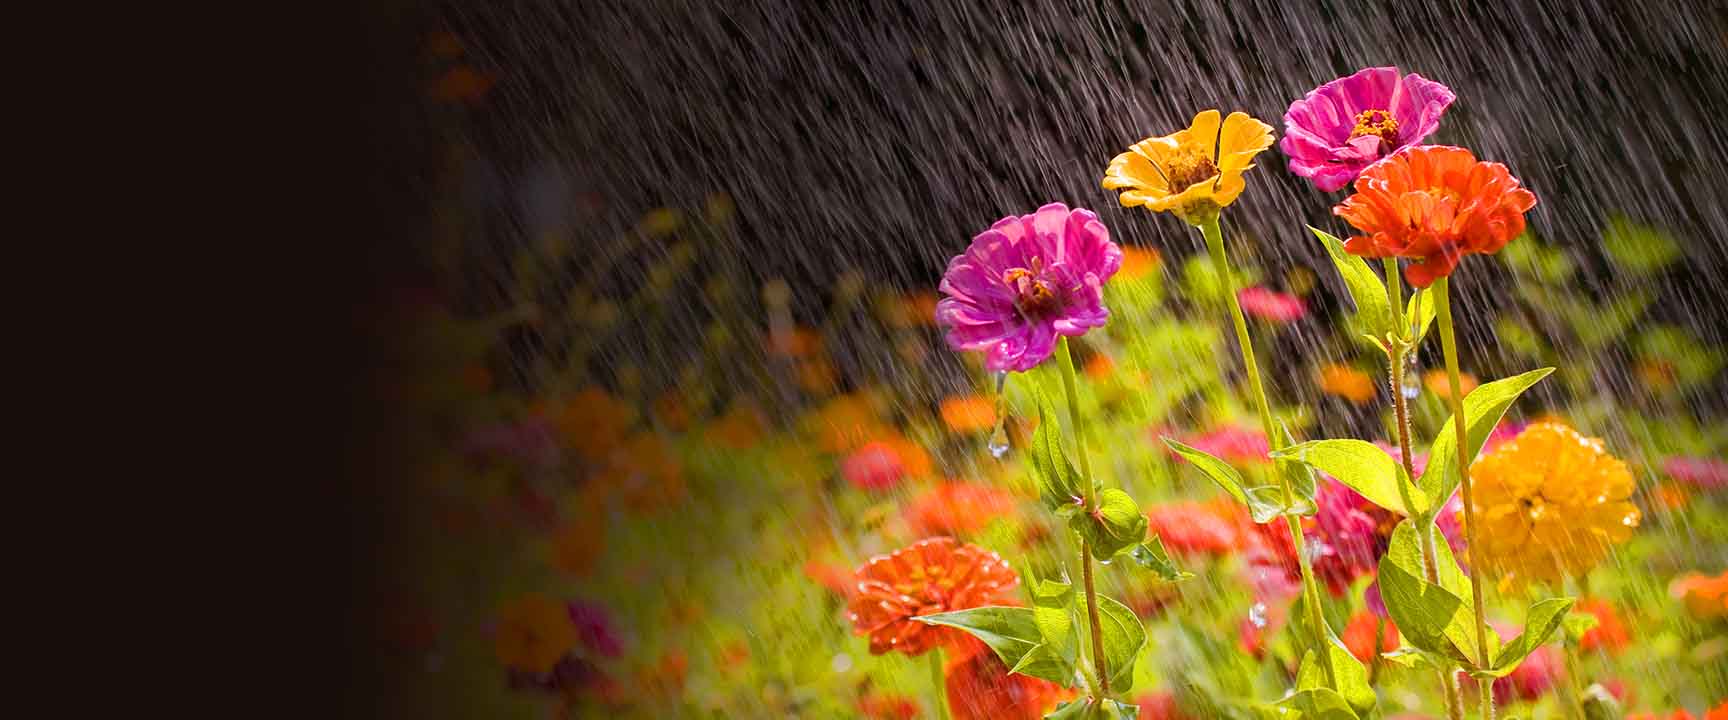 Mưa rơi trên vườn hoa.